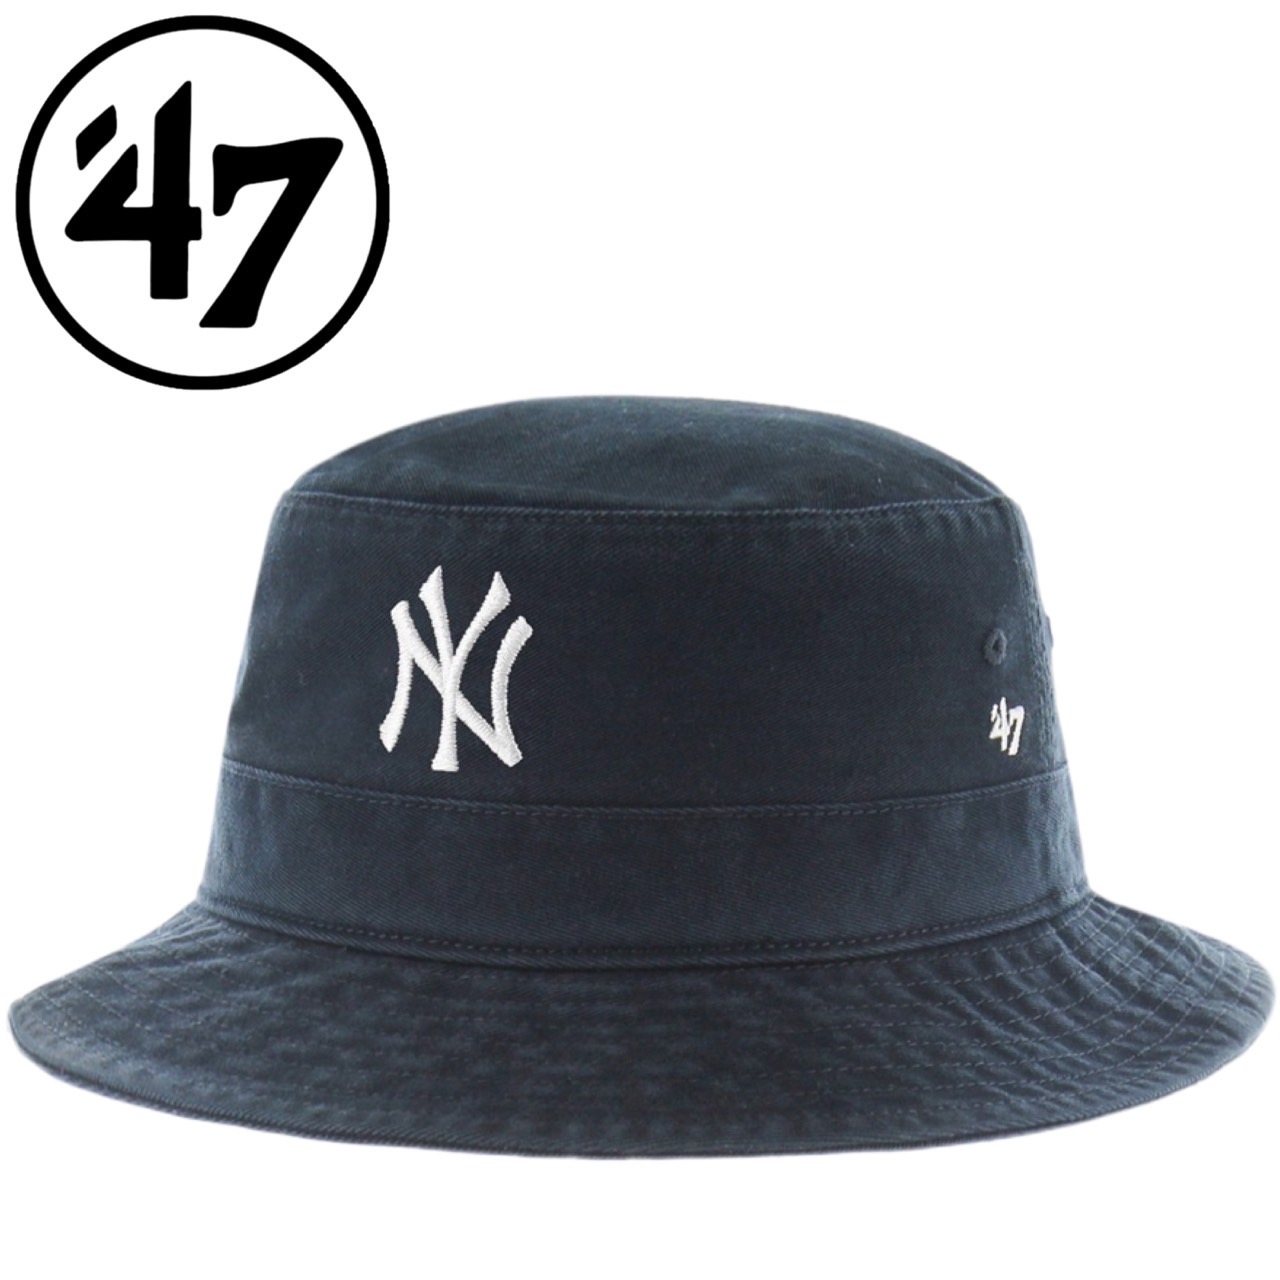 47 フォーティーセブン ブランド 帽子 バケット ハット 紫外線対策 バケハ サファリハット メンズ レディース 野球チーム 男女兼用 47  BRAND BUCKET HAT